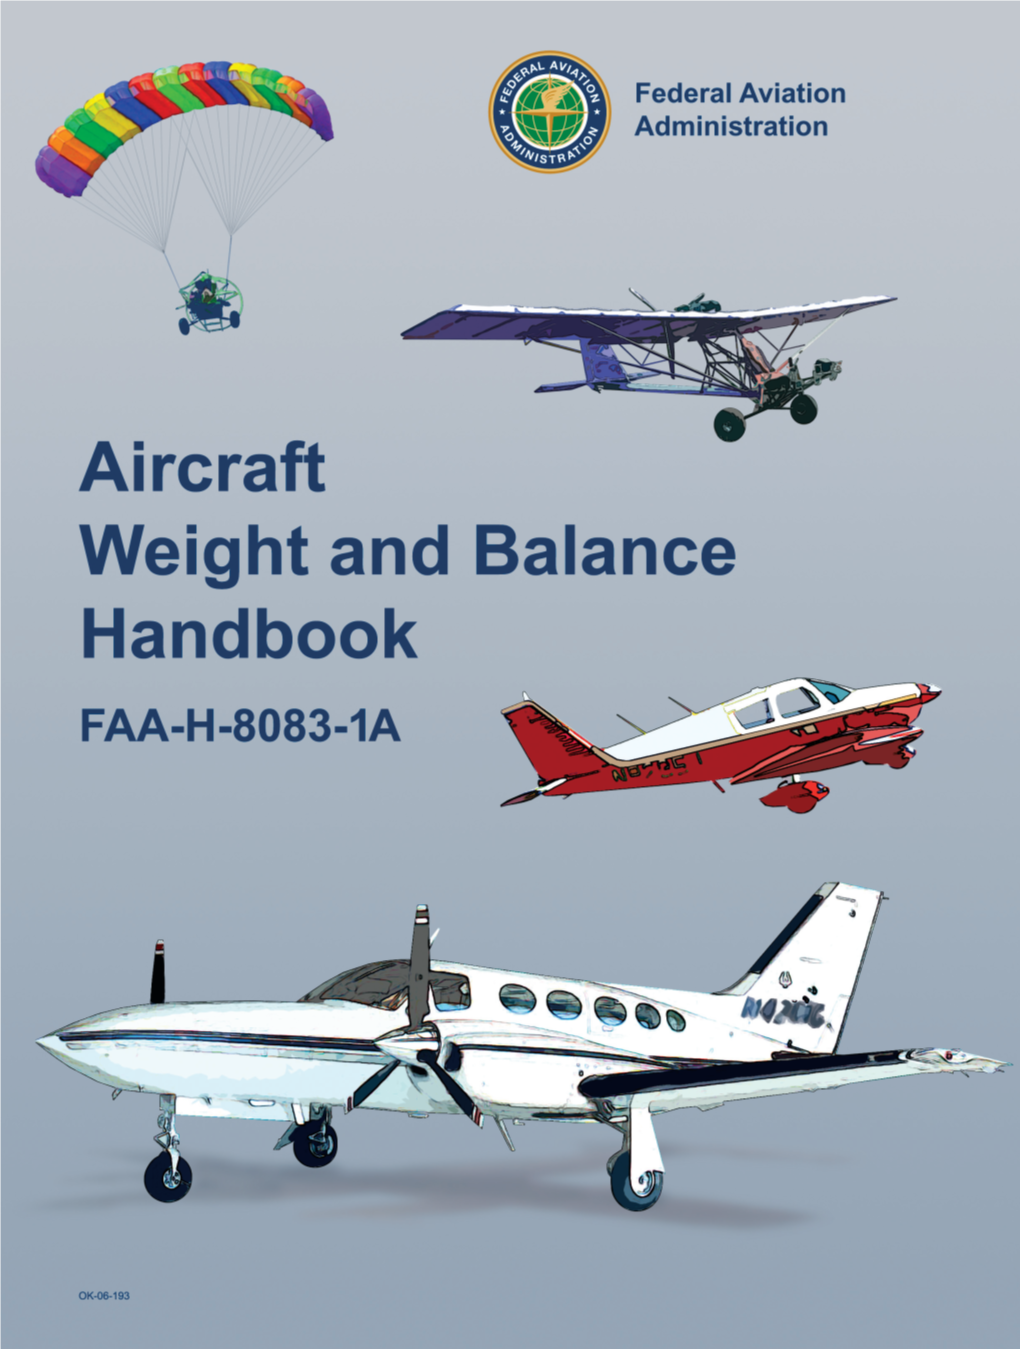 FAA-H-8083-1A Weight and Balance Handbook